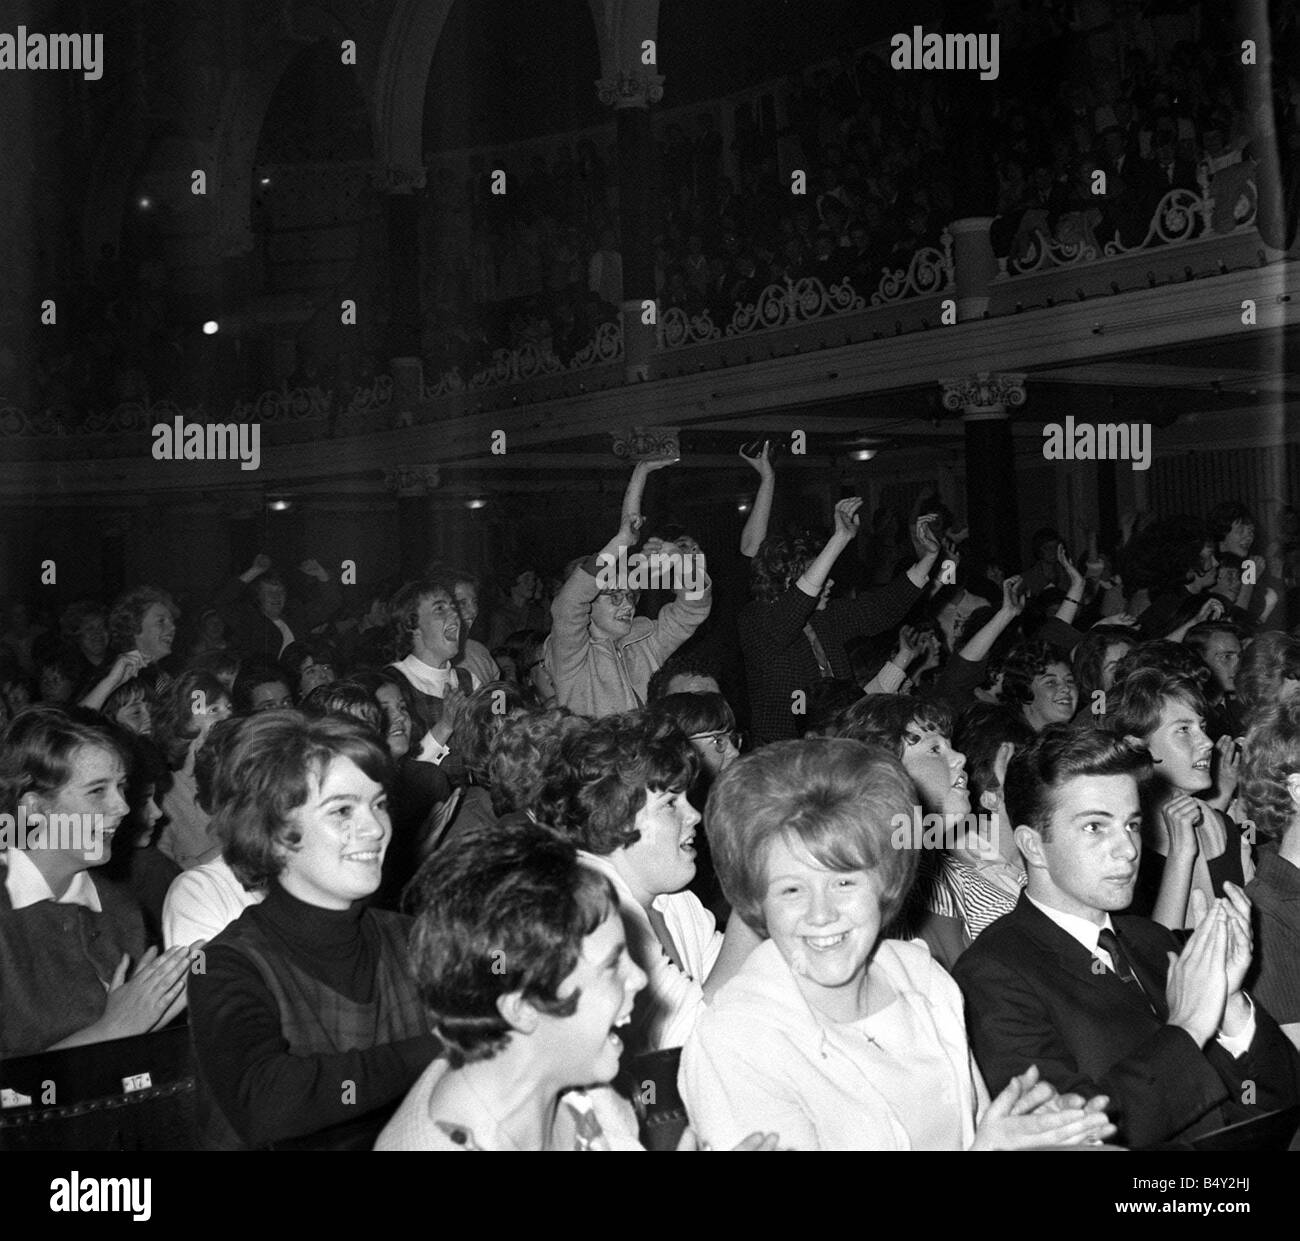 Pop Group The Beatles September 1963 John Lennon Paul McCartney Ringo ...